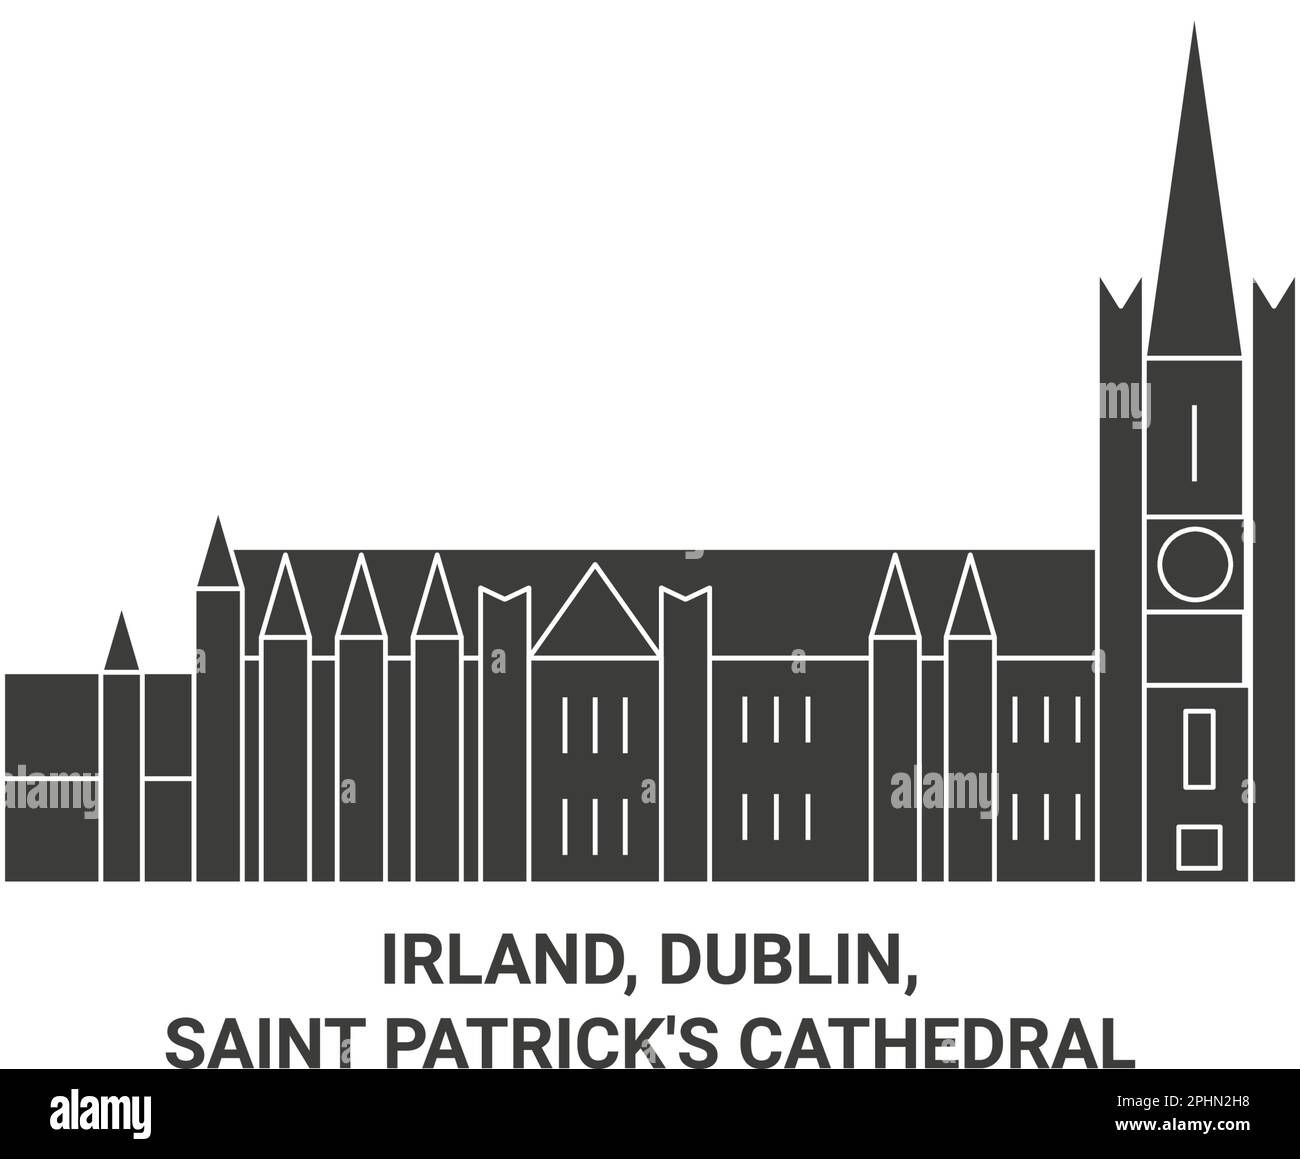 Irland, Dublin, Saint Patrick's Cathedral reisen Wahrzeichen Vektordarstellung Stock Vektor